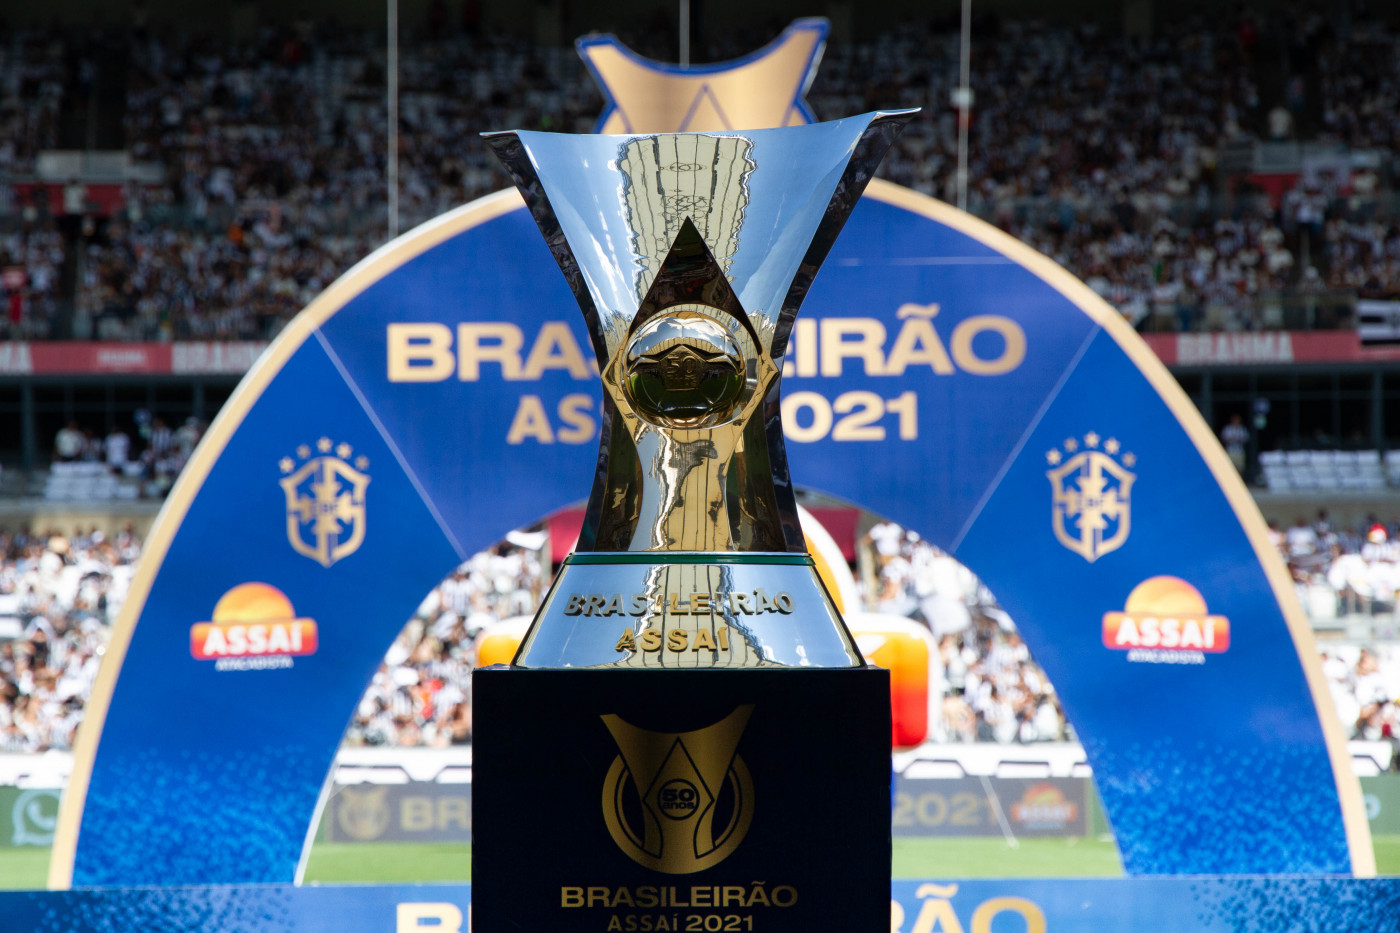 Taça do Brasileirão colocada em pedestal em frente a arco com o nome do campeonato